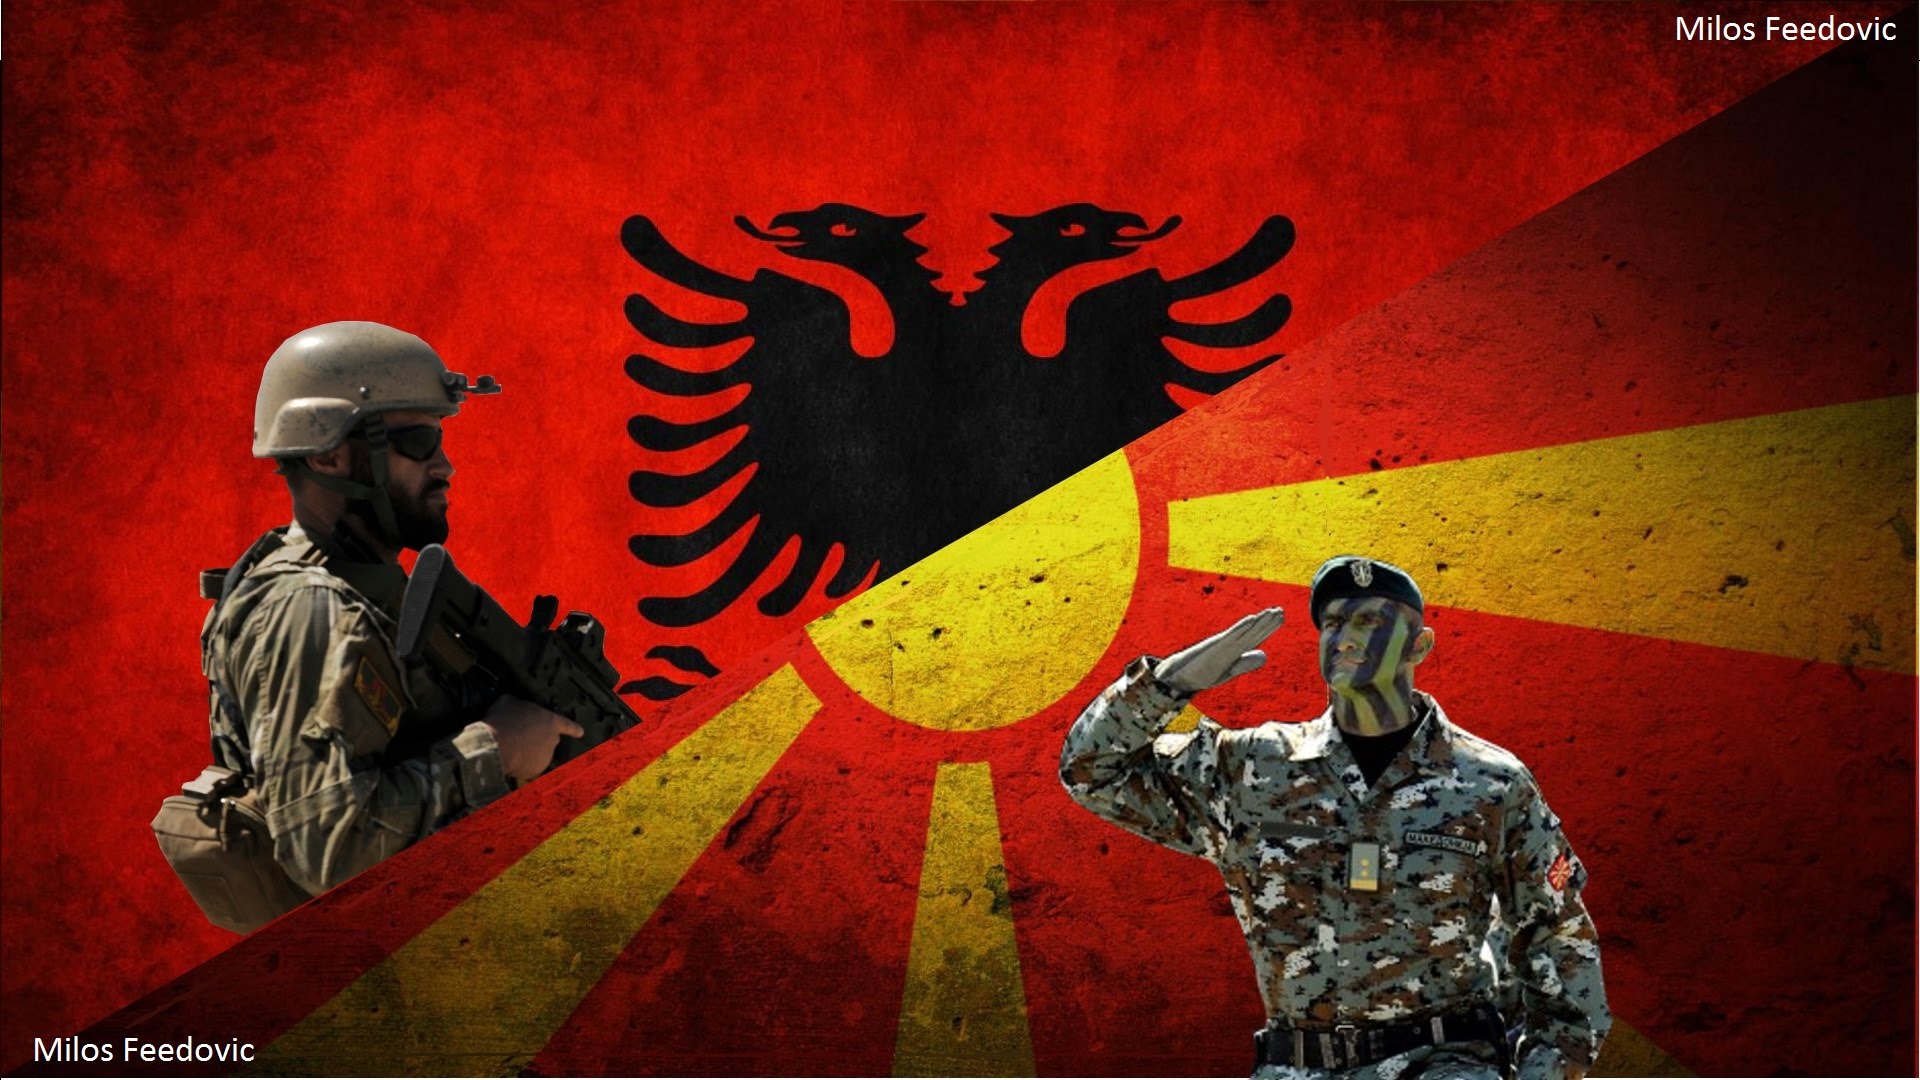 Οι Αλβανοί των Σκοπίων απειλούν με απόσχιση προ του δημοψηφίσματος της 30ης Σεπτεμβρίου και θέτουν  όρους στον Ζ.Ζάεφ